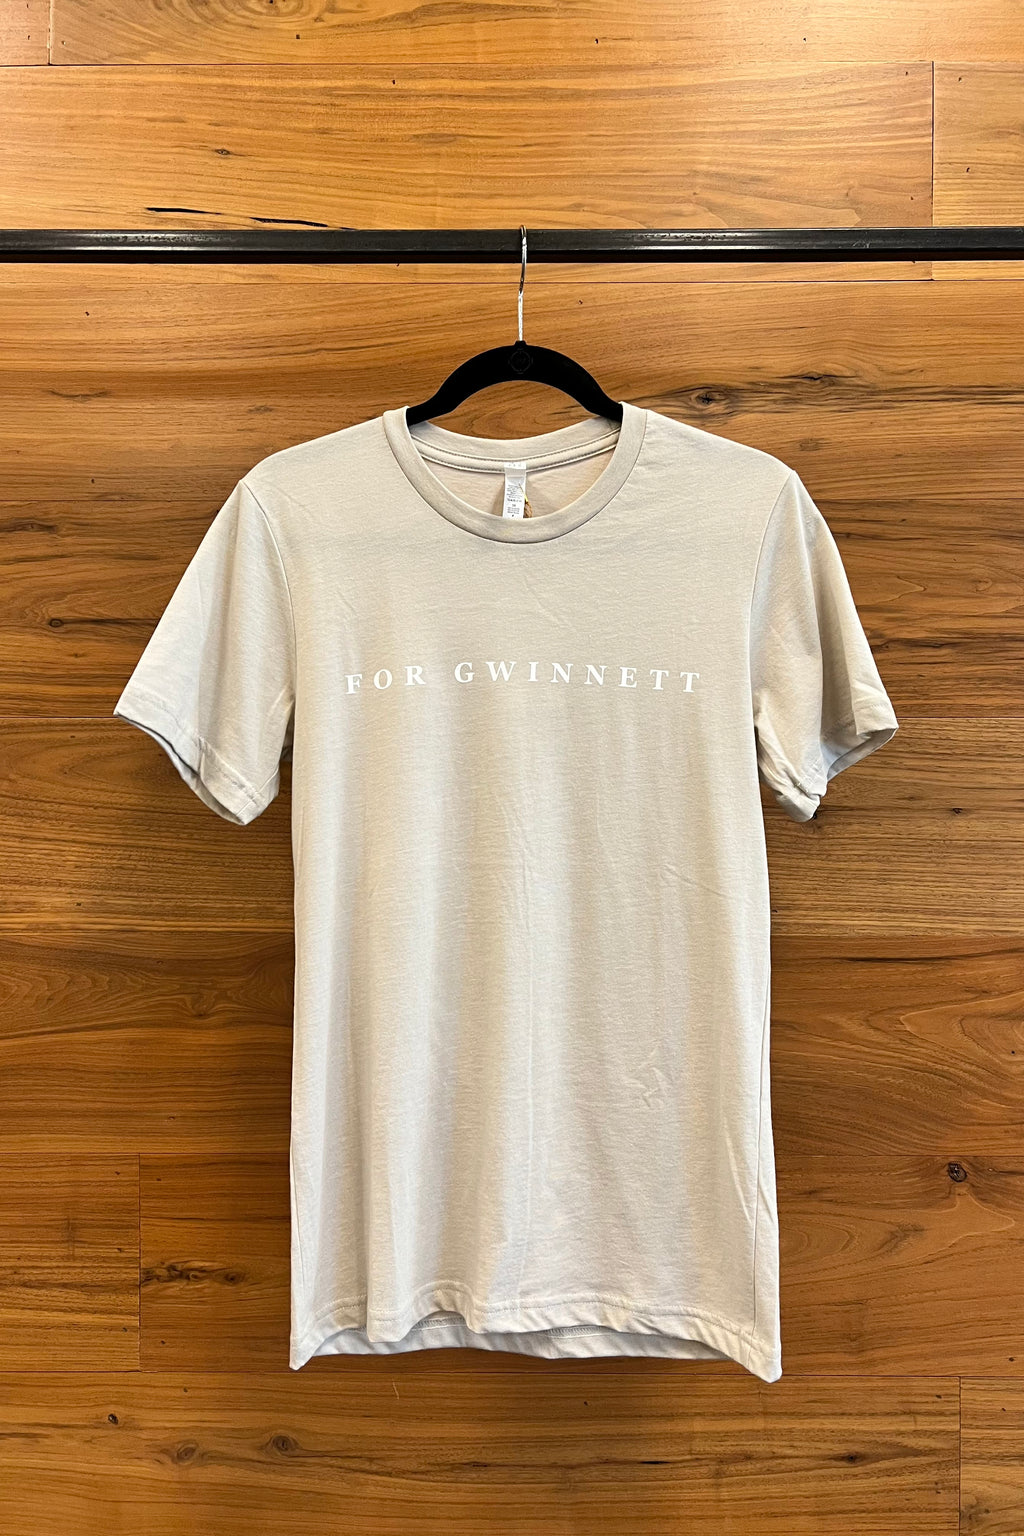 For Gwinnett Tan T-shirt